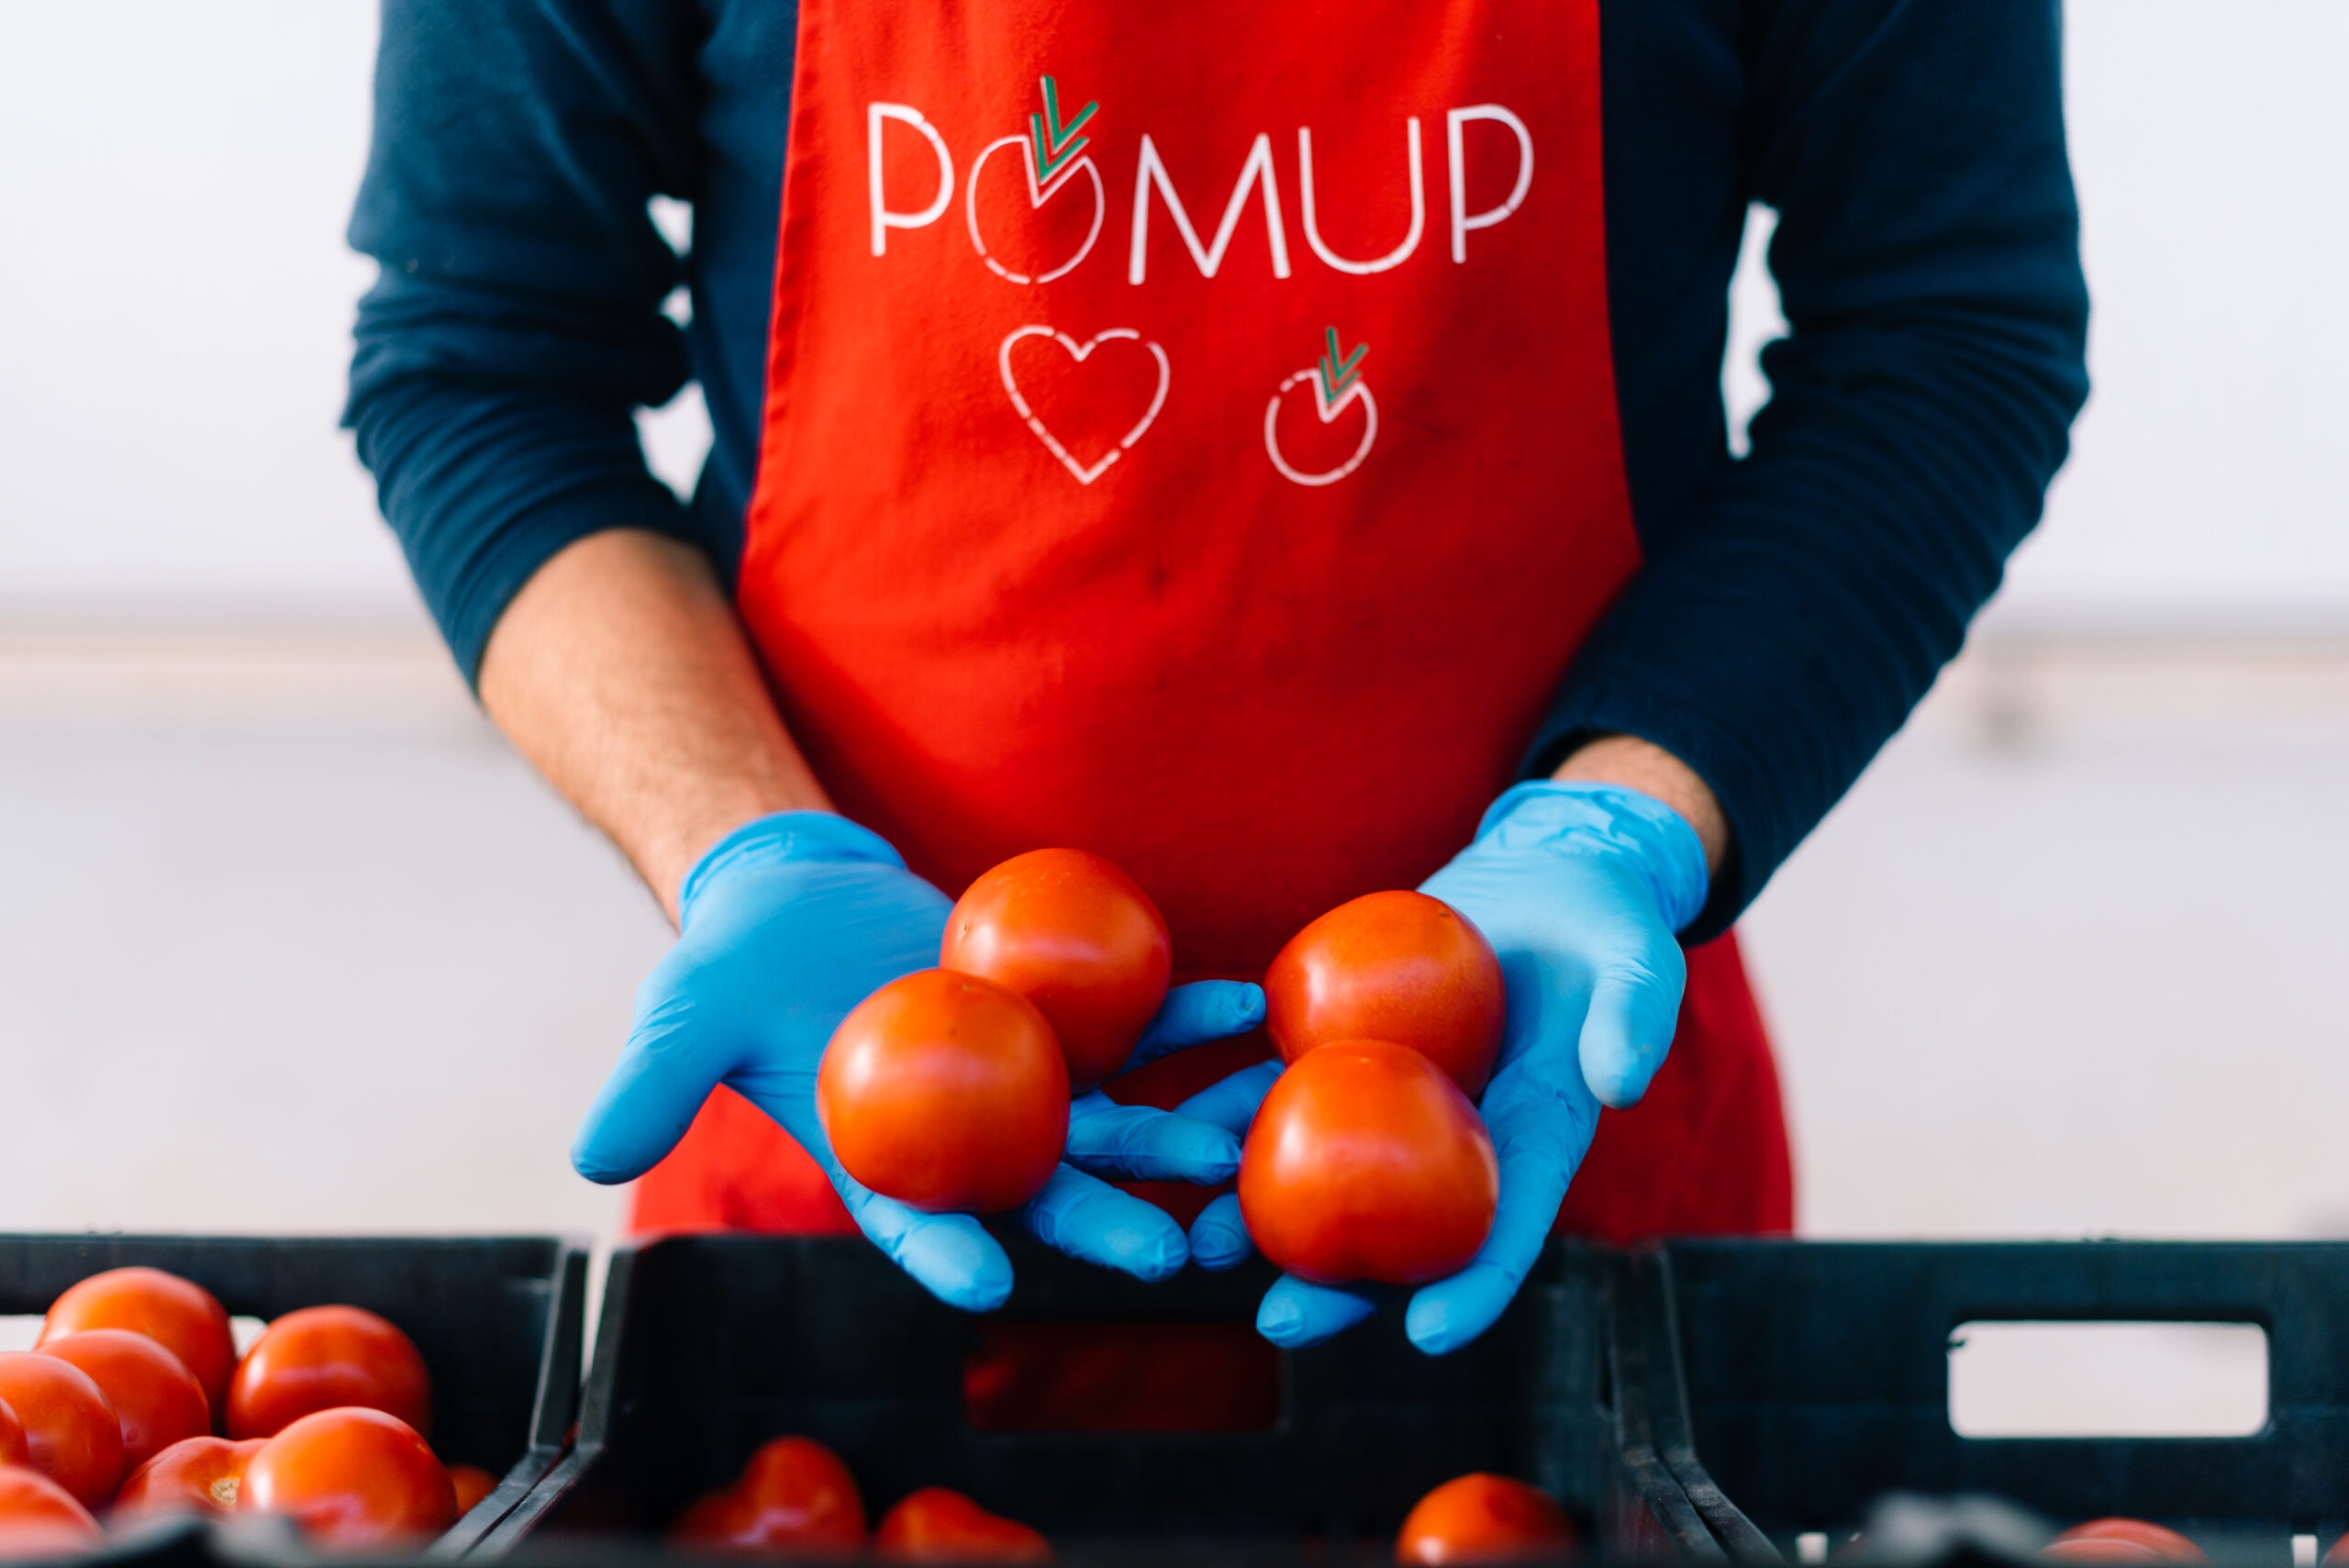 Pomup - pomodori semisecchi freschi made in italy